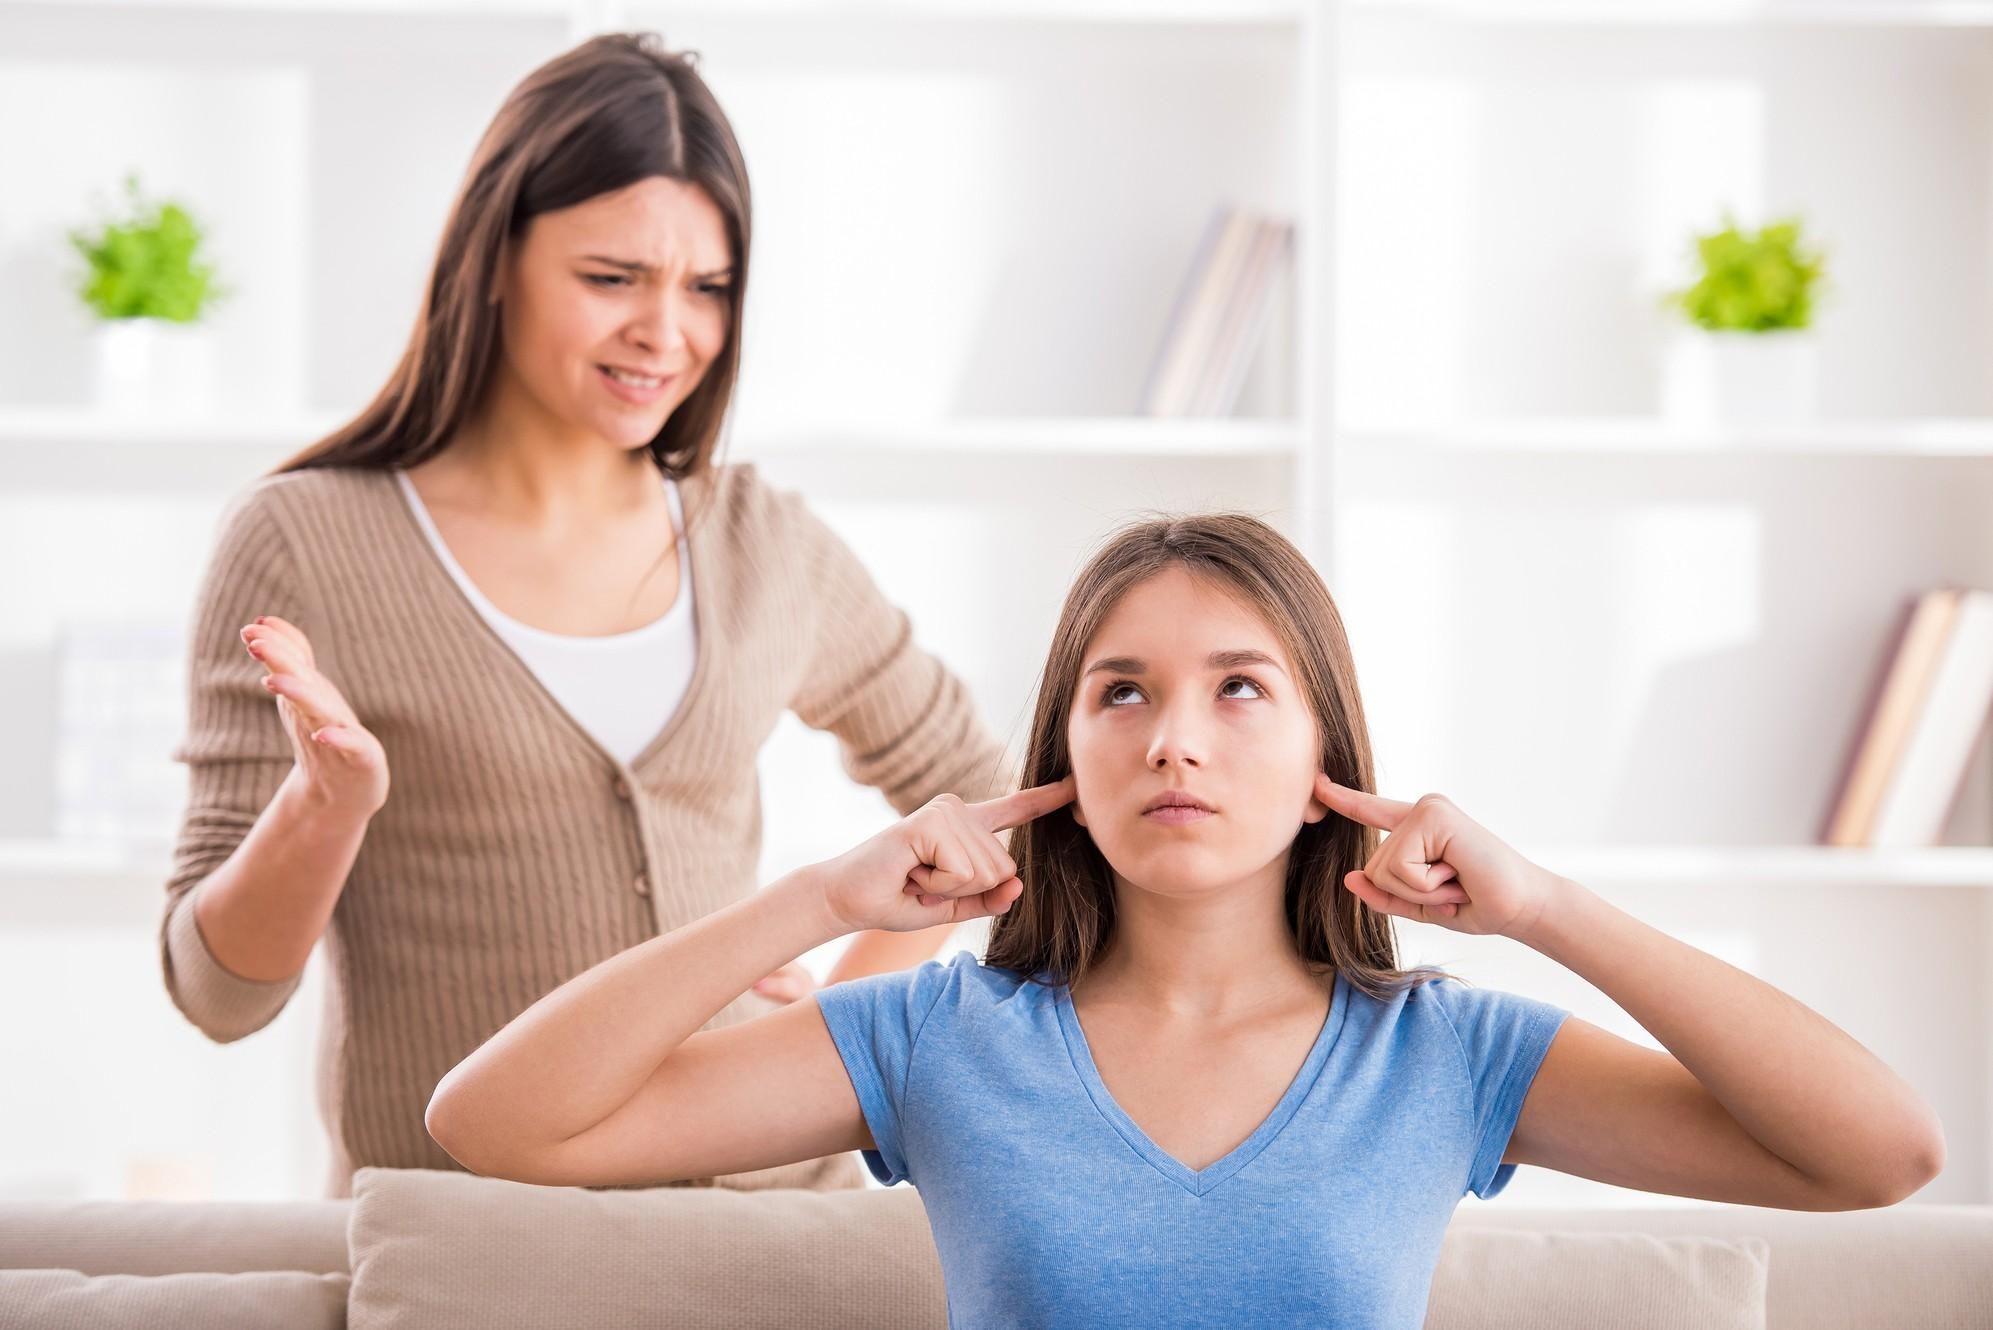 Как родителям найти общий язык с подростком: советы психолога